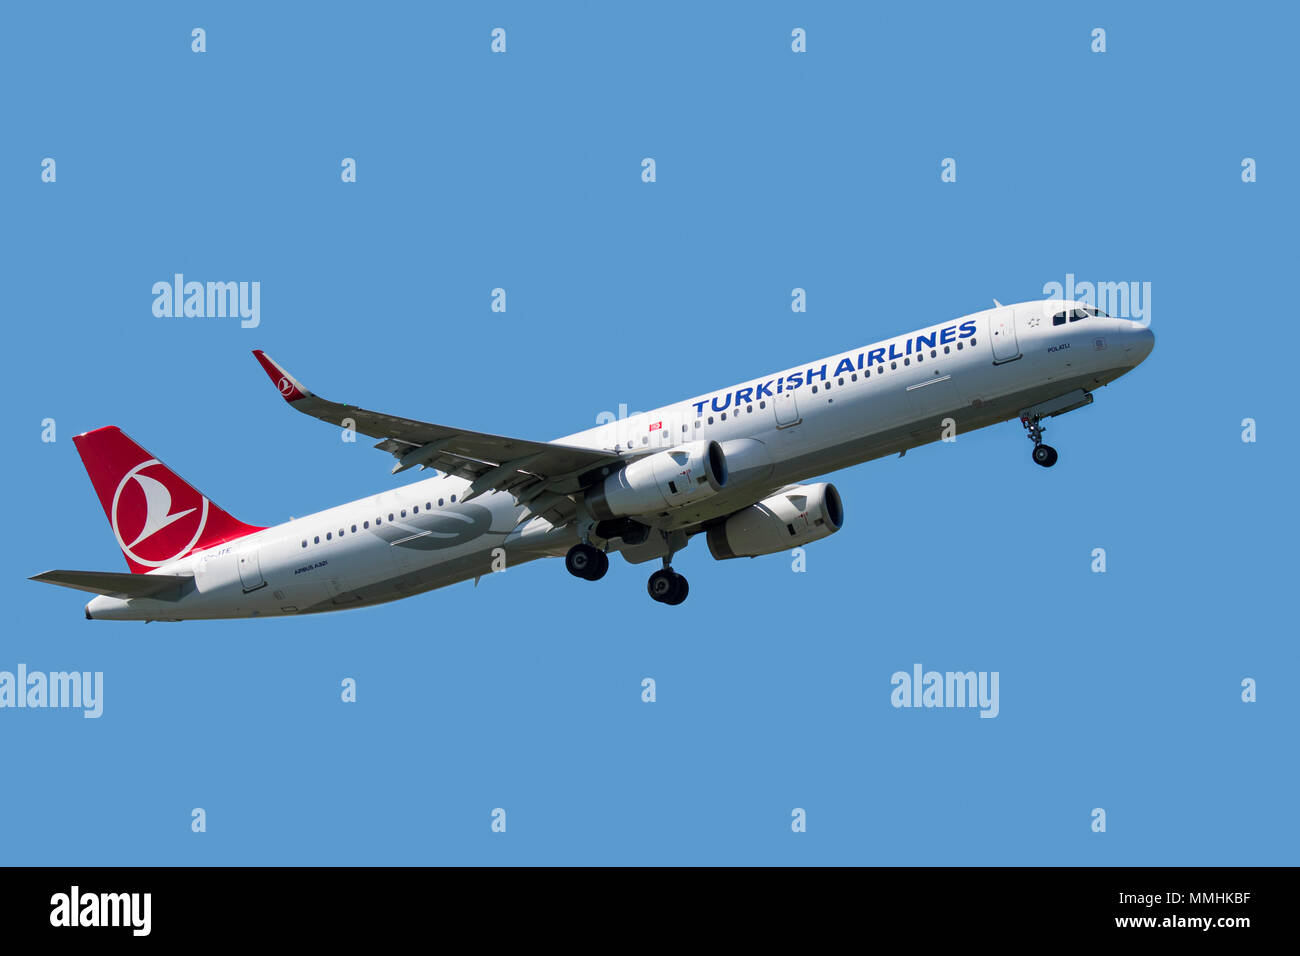 Airbus A321-231, fuselage étroit, bimoteur de transport commercial de passagers avion de ligne de Turkish Airlines en vol sur fond de ciel bleu Banque D'Images